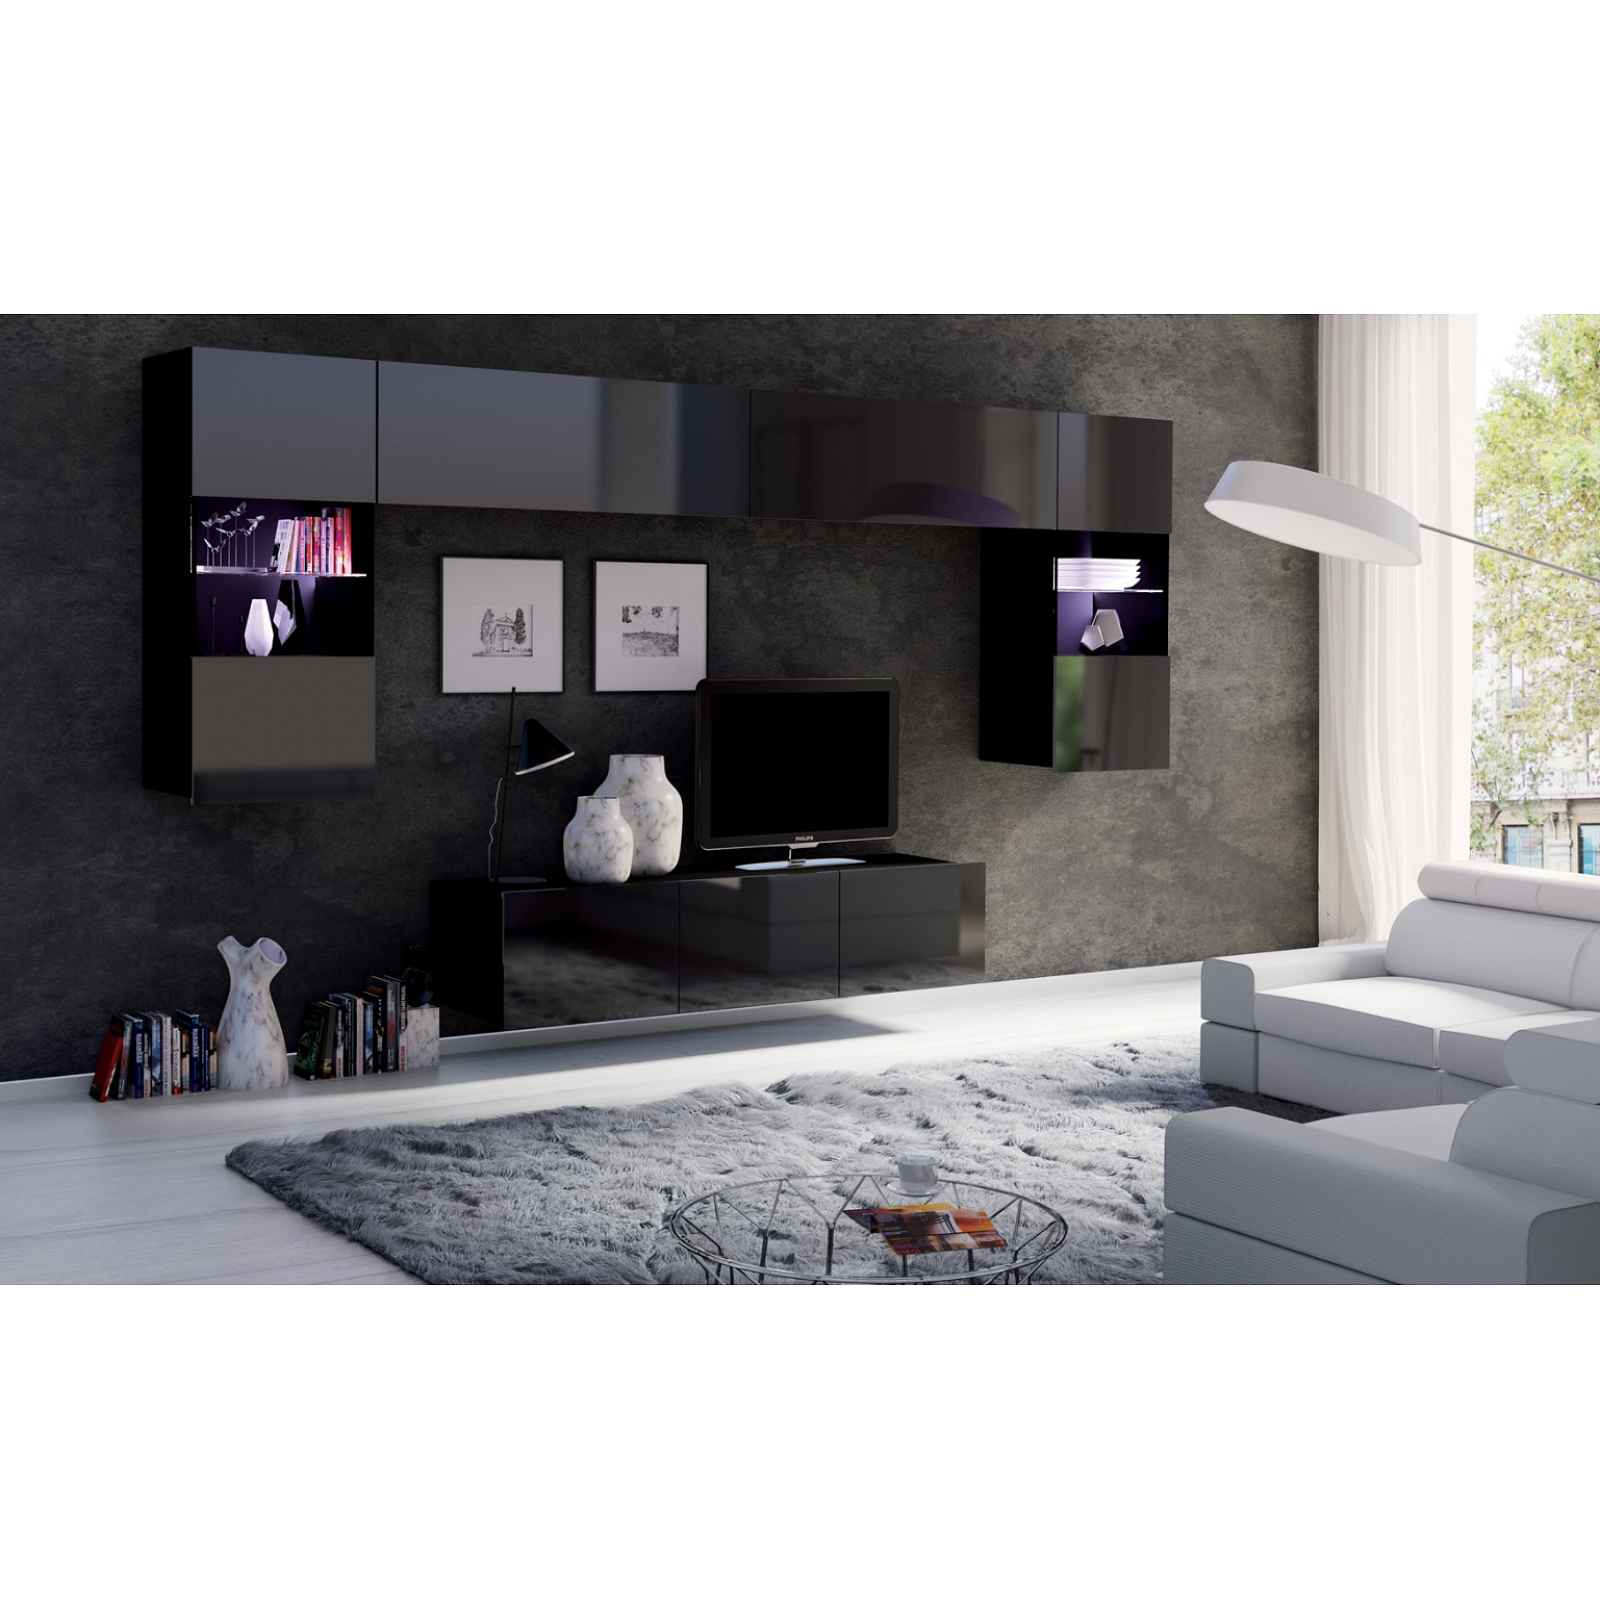 Moderní bytový nábytek Celeste C černý